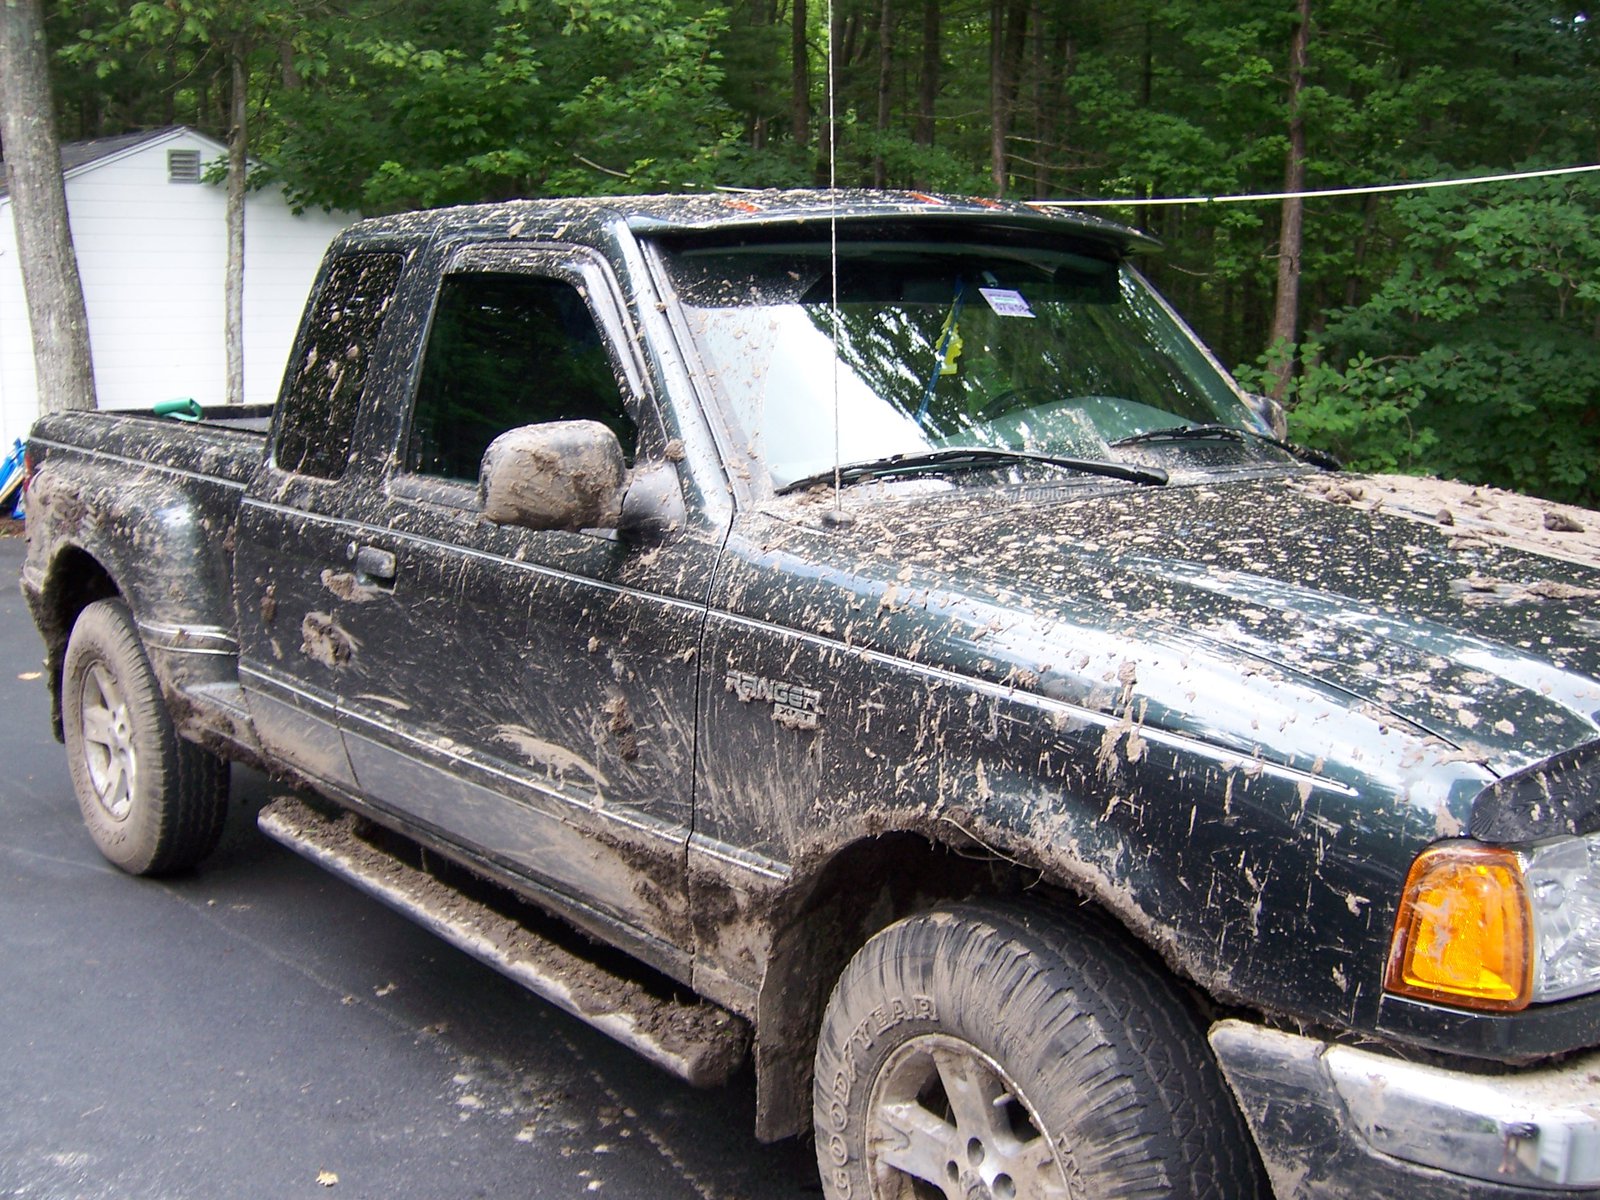 Muddy range'